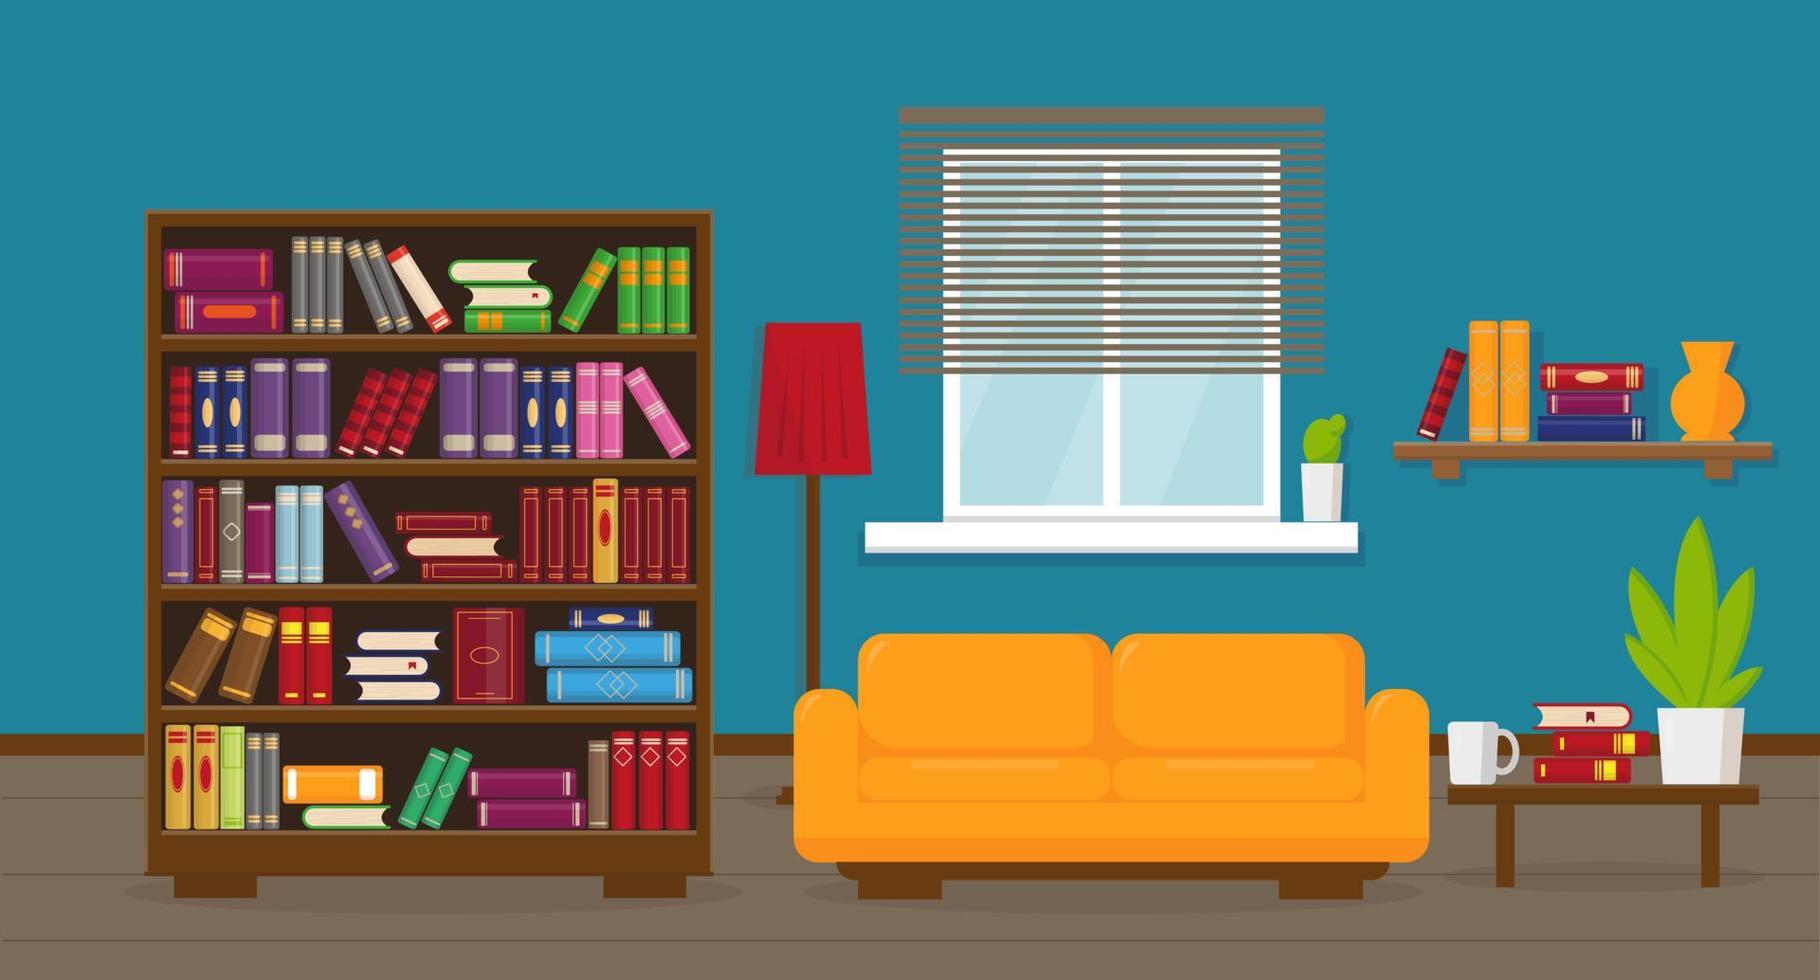 vardagsrum eller lägenhet med bokhylla, soffa, bord, lampa, bokhyllor och fönster. interiör koncept. vektor